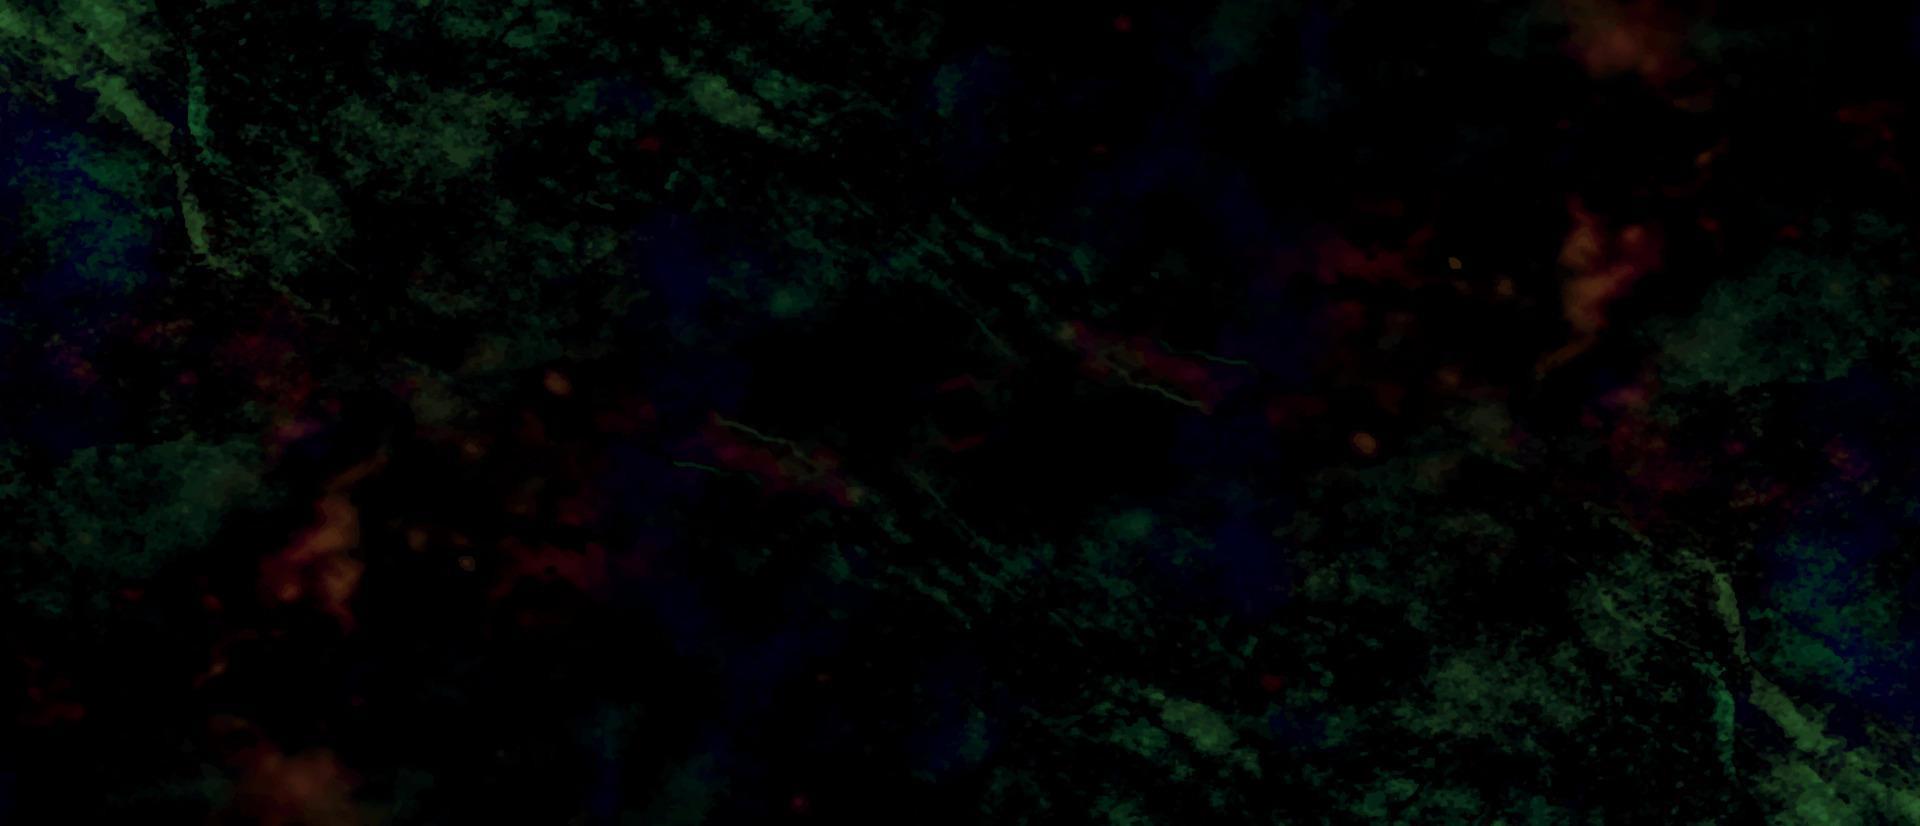 abstract waterverf achtergrond met ruimte. mooi groen en donker blauw oceaan achtergrond. donker beton muur. abstract metaal Roest grunge textuur. kleurrijk gebrandschilderd steenachtig roestig muur achtergrond. vector